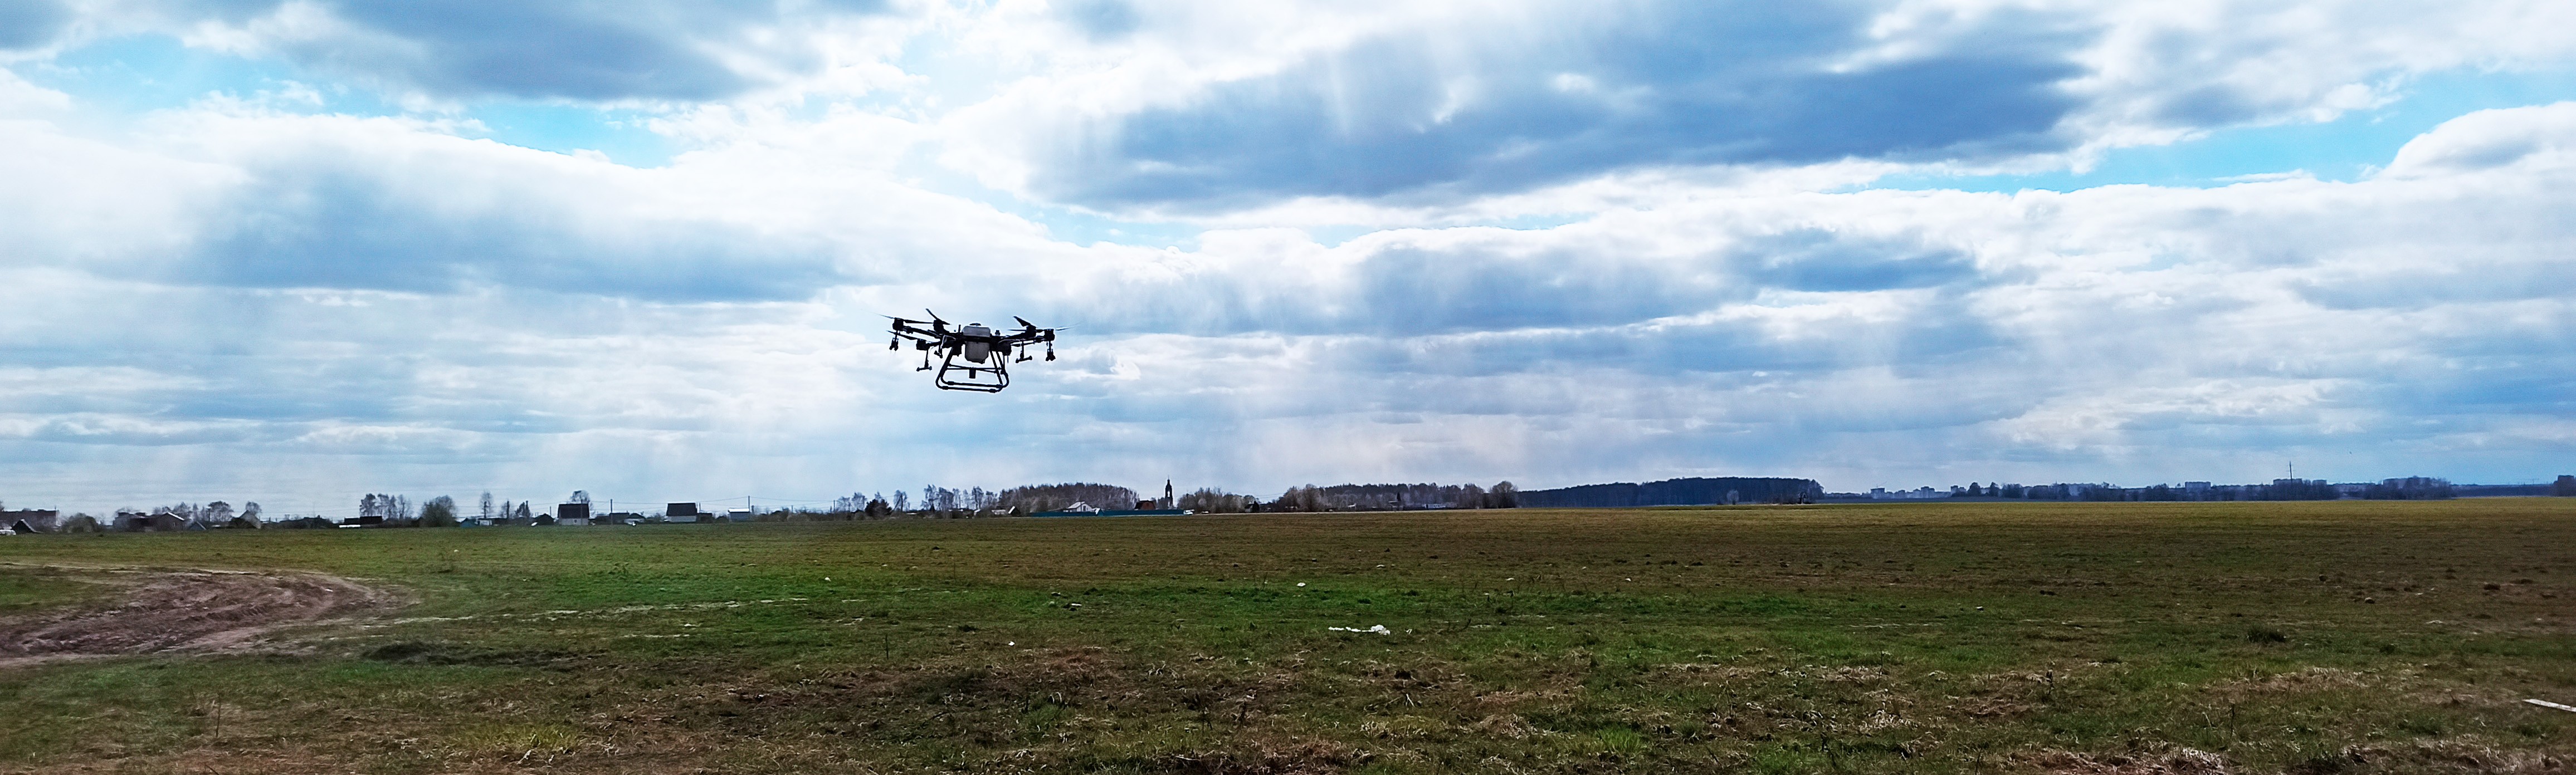 ООО «Агромир» повысил эффективность с помощью дронов DJI почти в 3 раза - агропромышленность